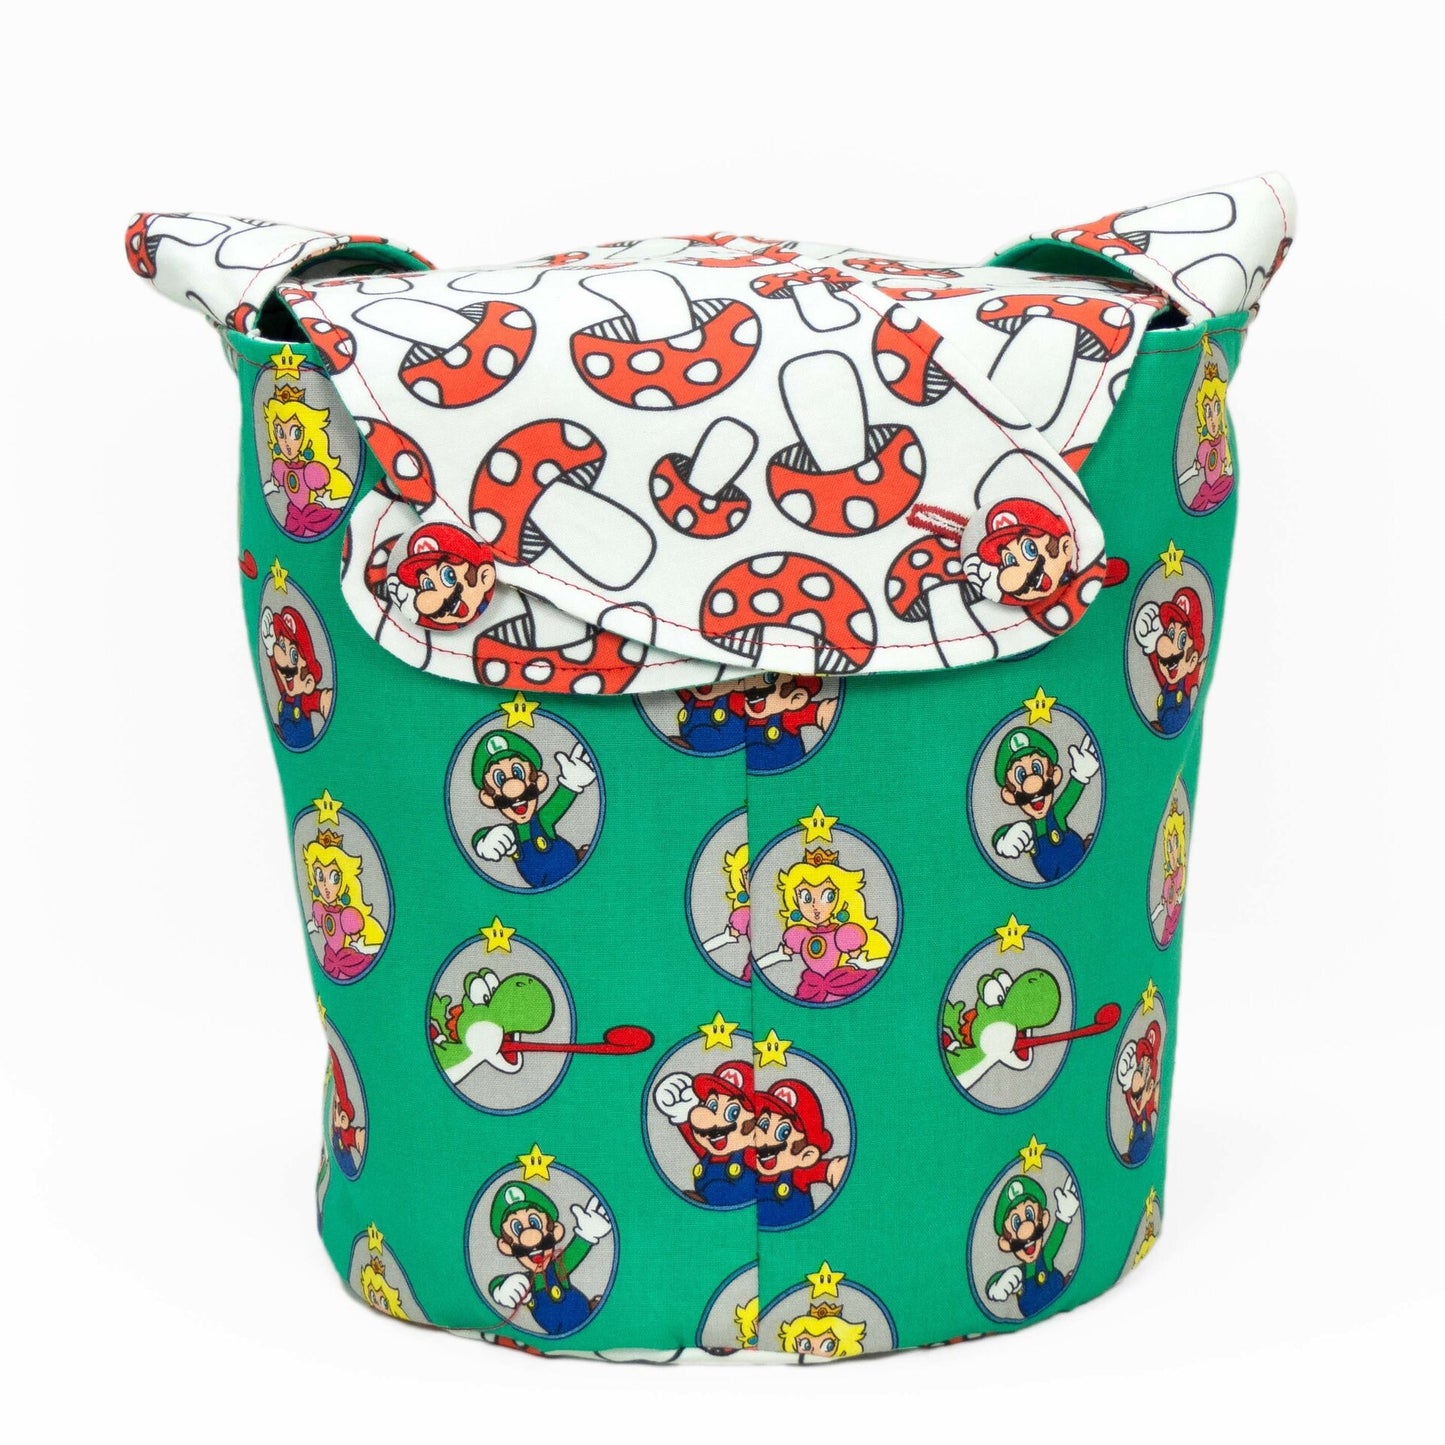 Super Mario Red Mushroom - Medium Llayover Knitting Tote / Knitting, Spinning, Crochet Project Bag